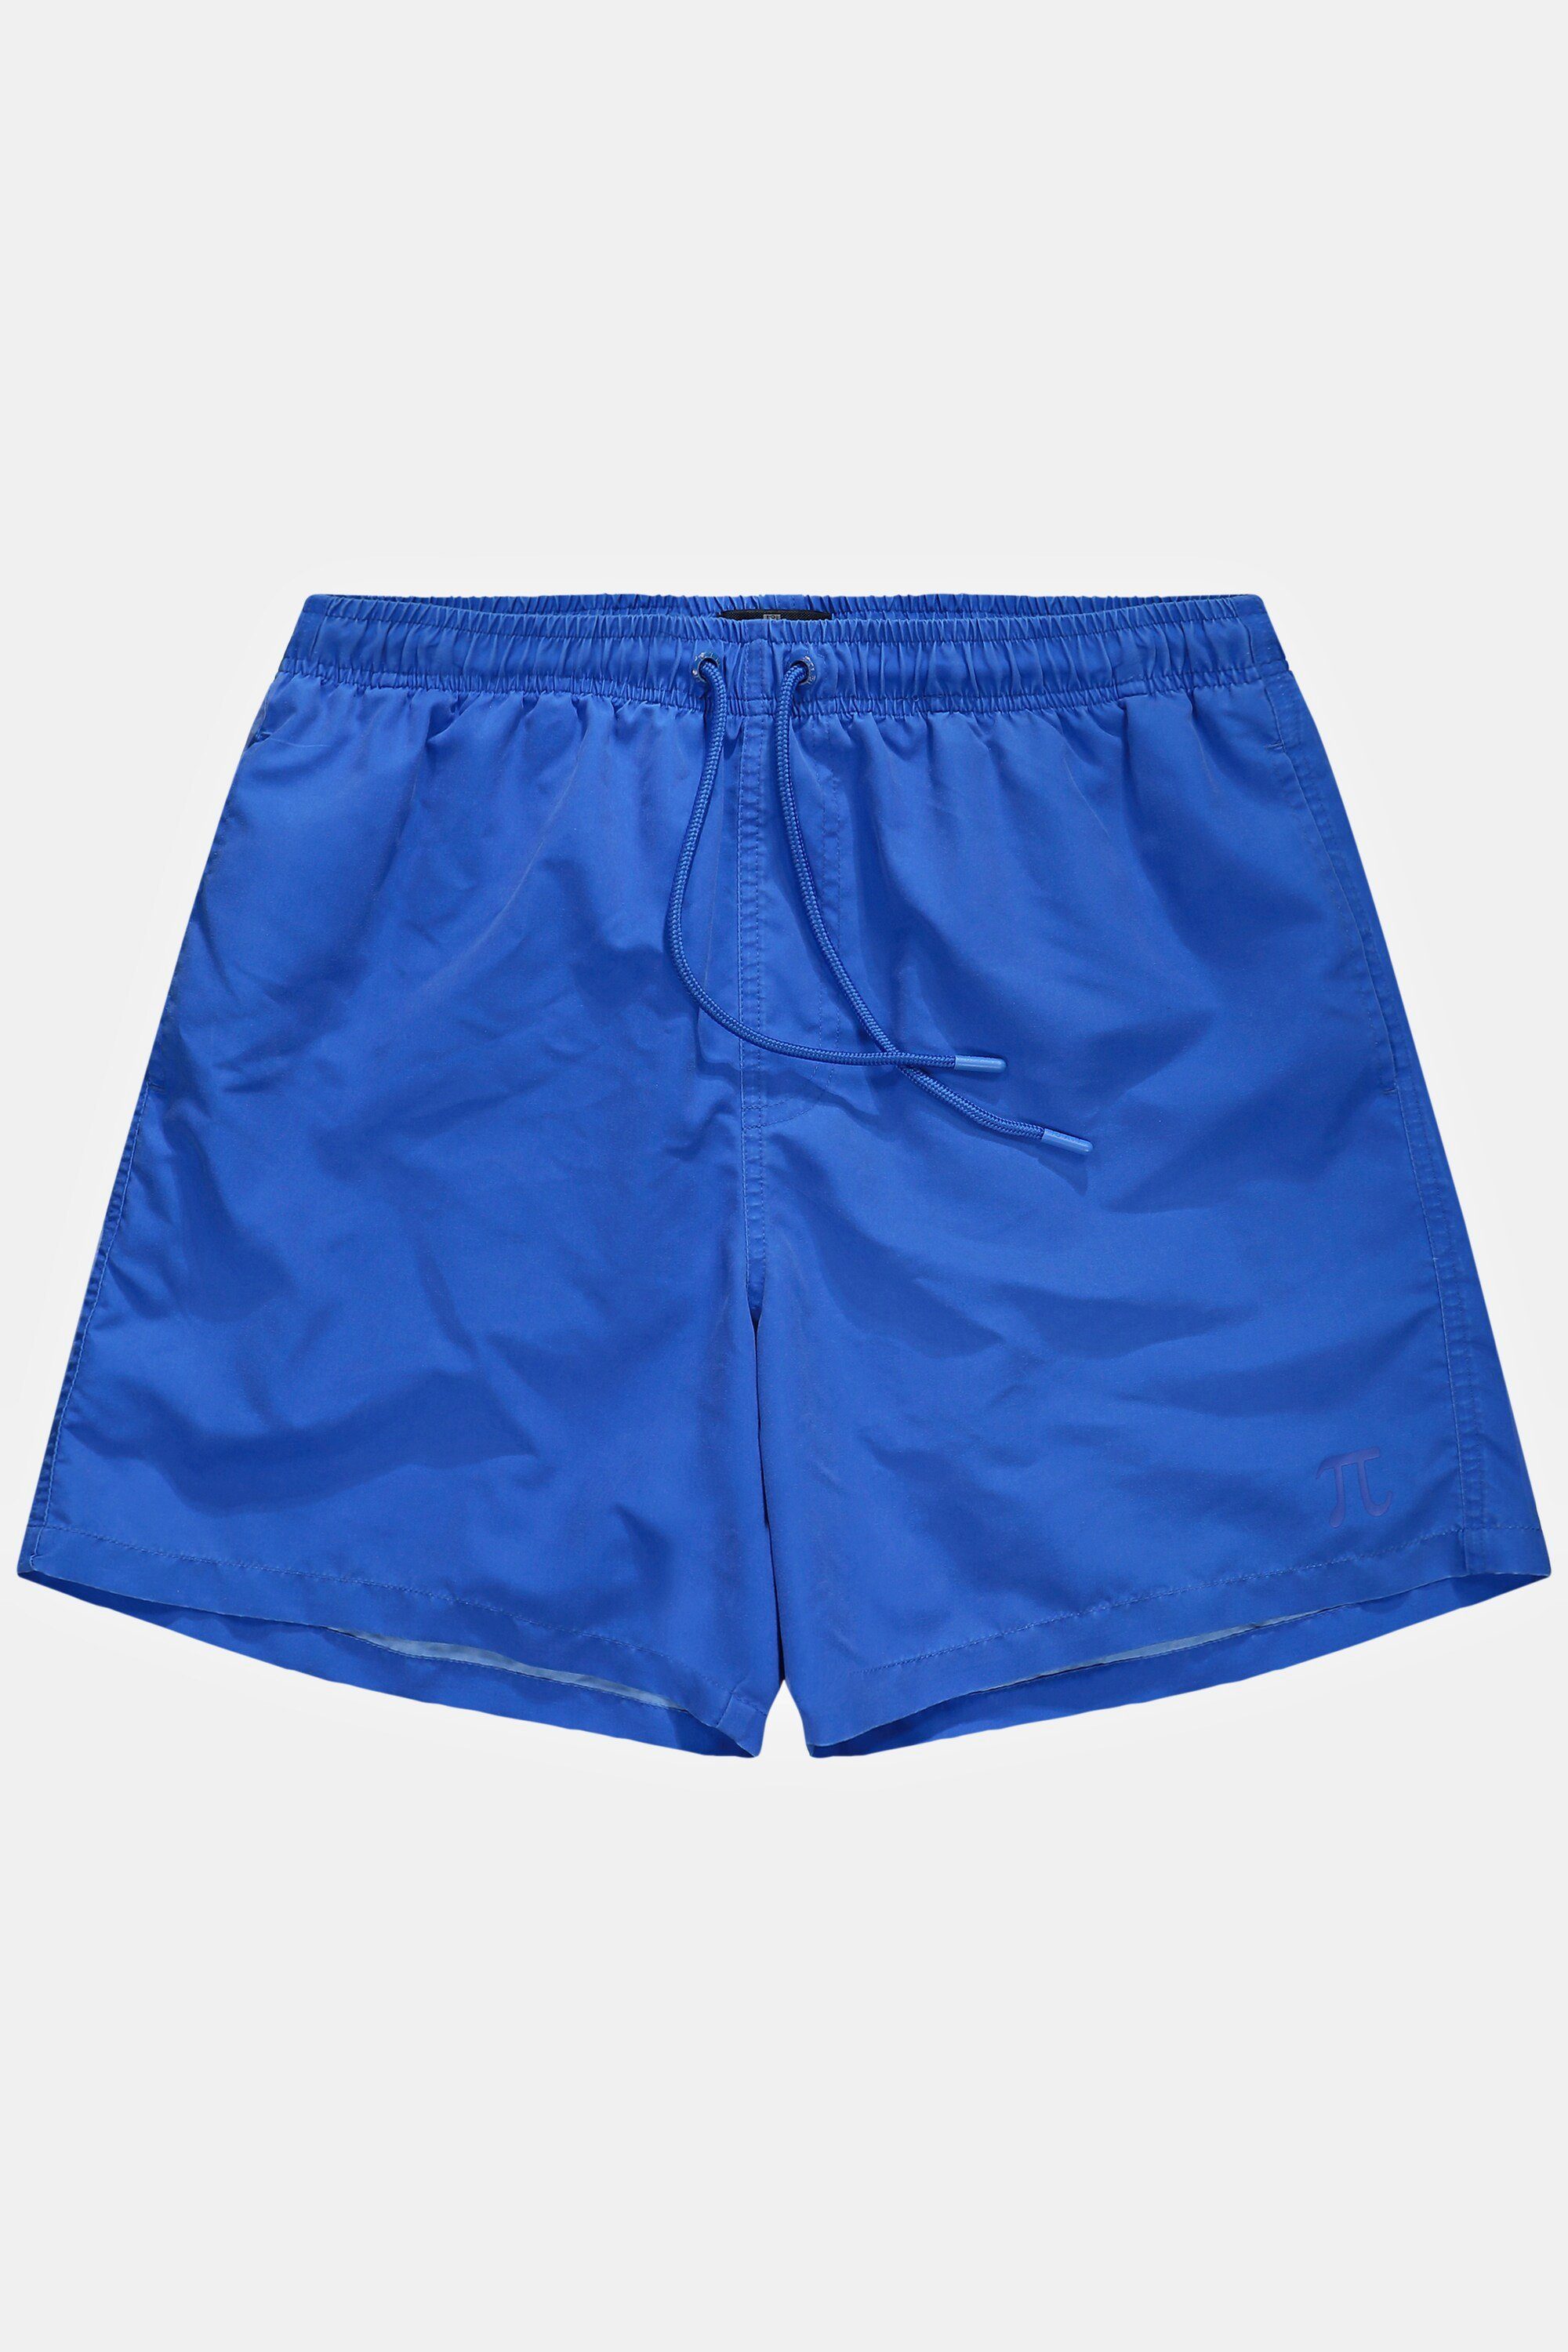 Badehose JP1880 Beachwear Badeshorts Elastikbund blau